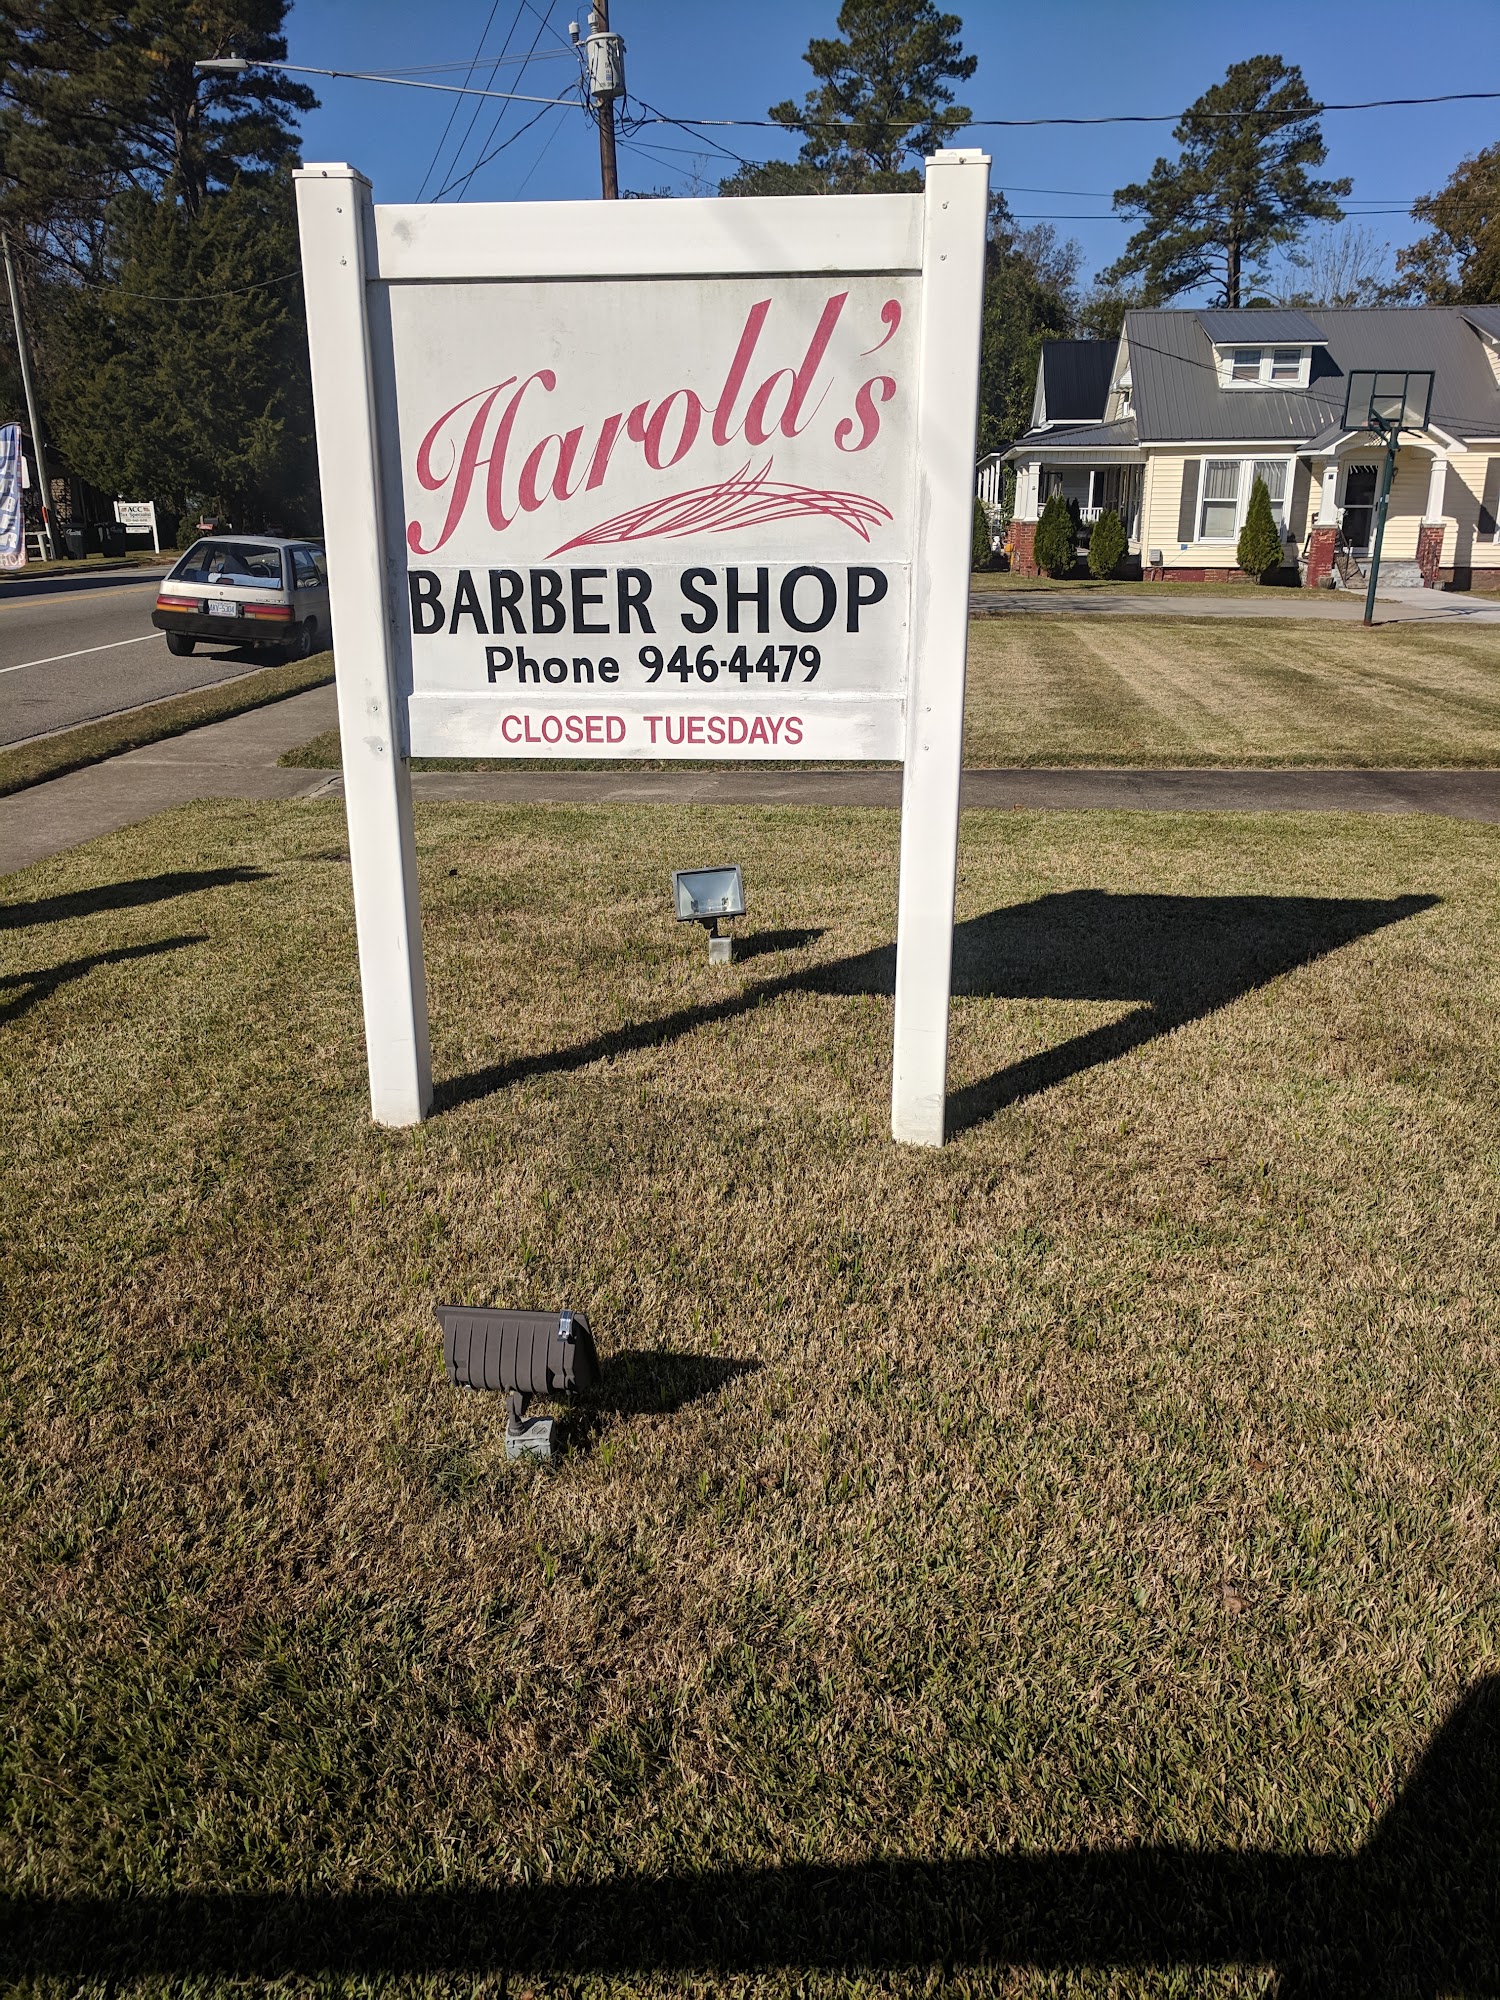 Harold's Barber Shop